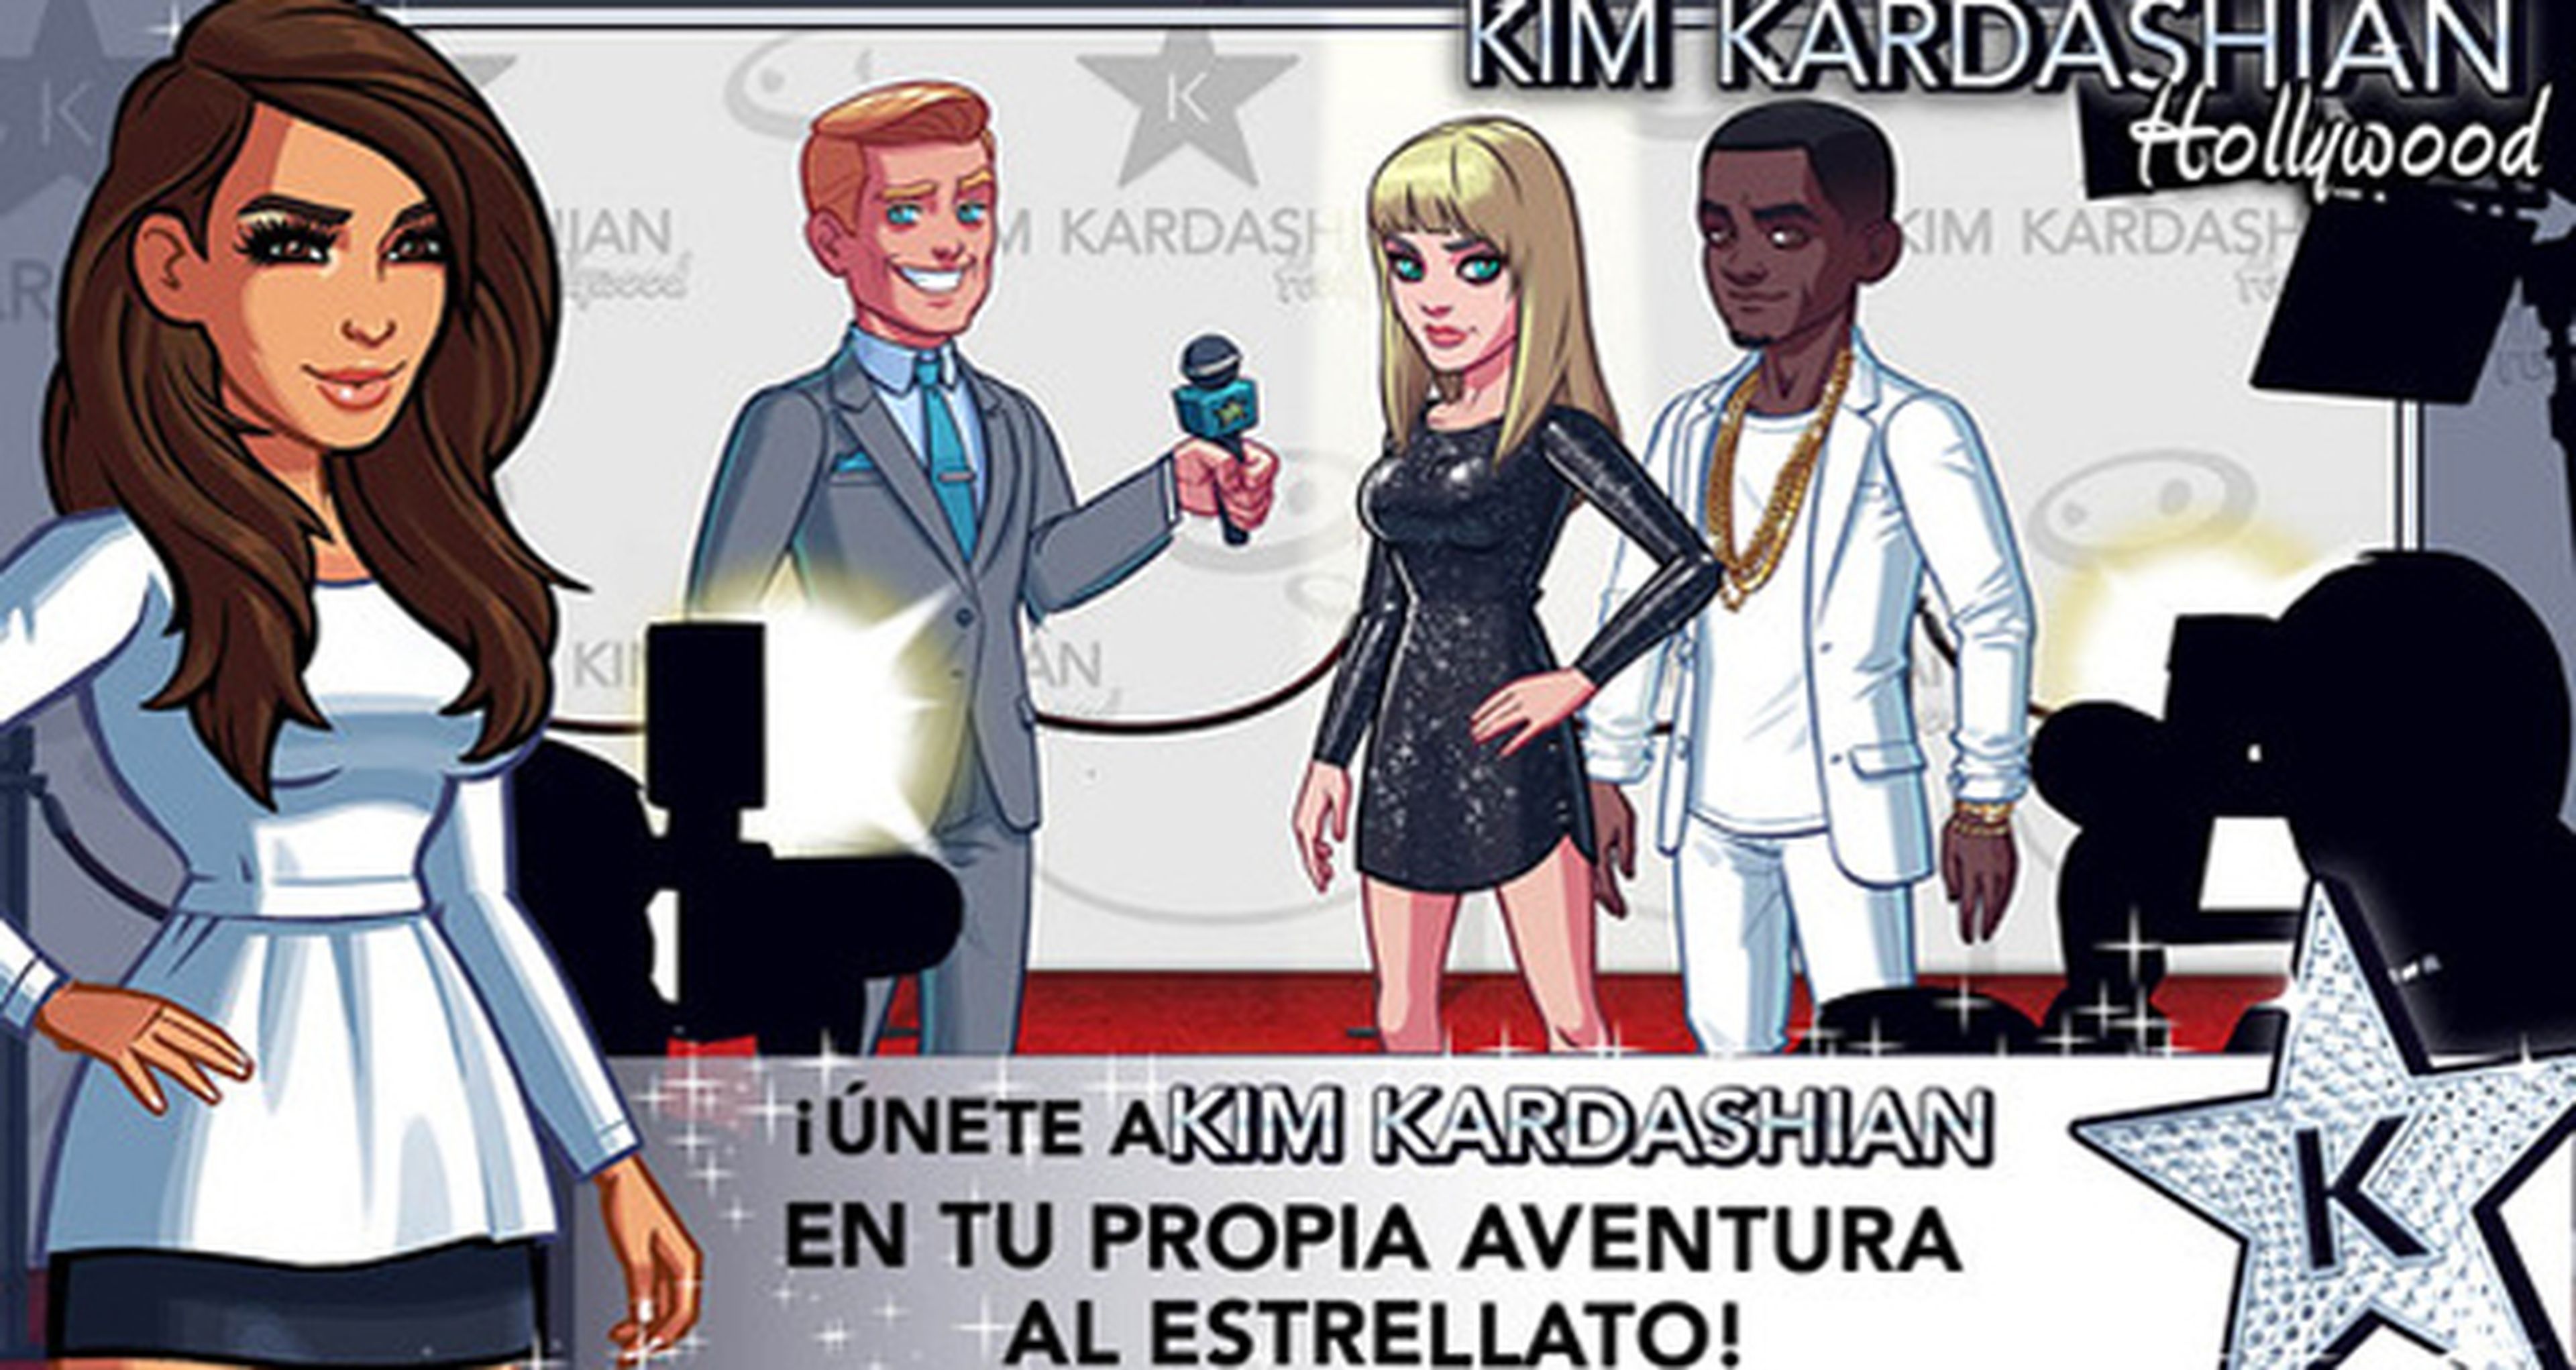 Kim Kardashian Hollywood arrasa en iOS y Android